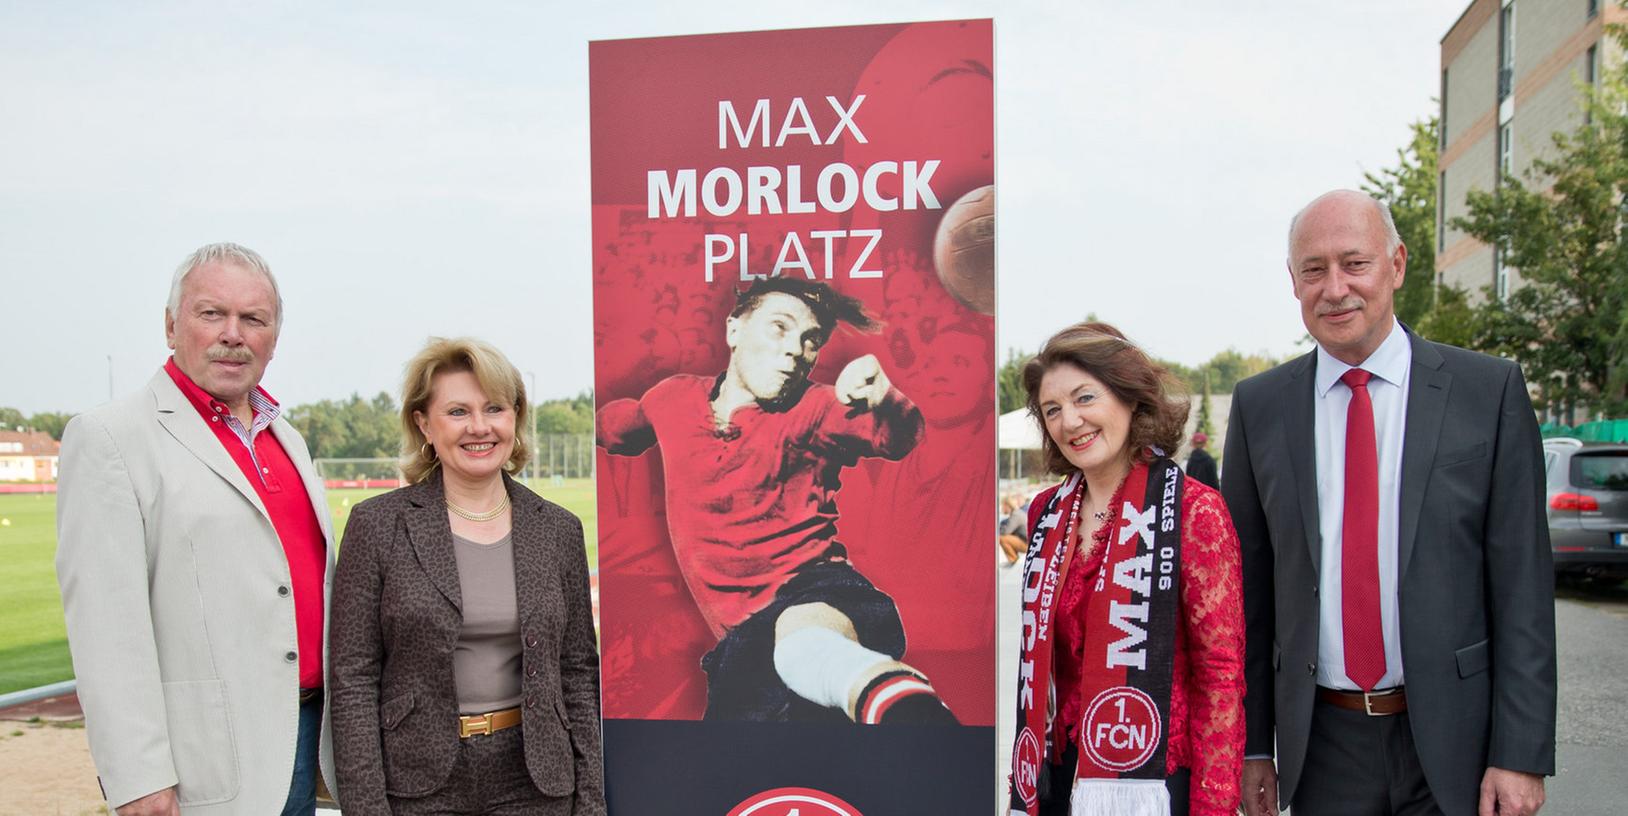 Die Töchter der Club-Legende Max Morlock, Birgit Bussinger (l) und Ursula Diehl mit Finanzvorstand Ralf Woy (r) und dem FCN-Aufsichtsratvorsitzenden Klaus Schramm.